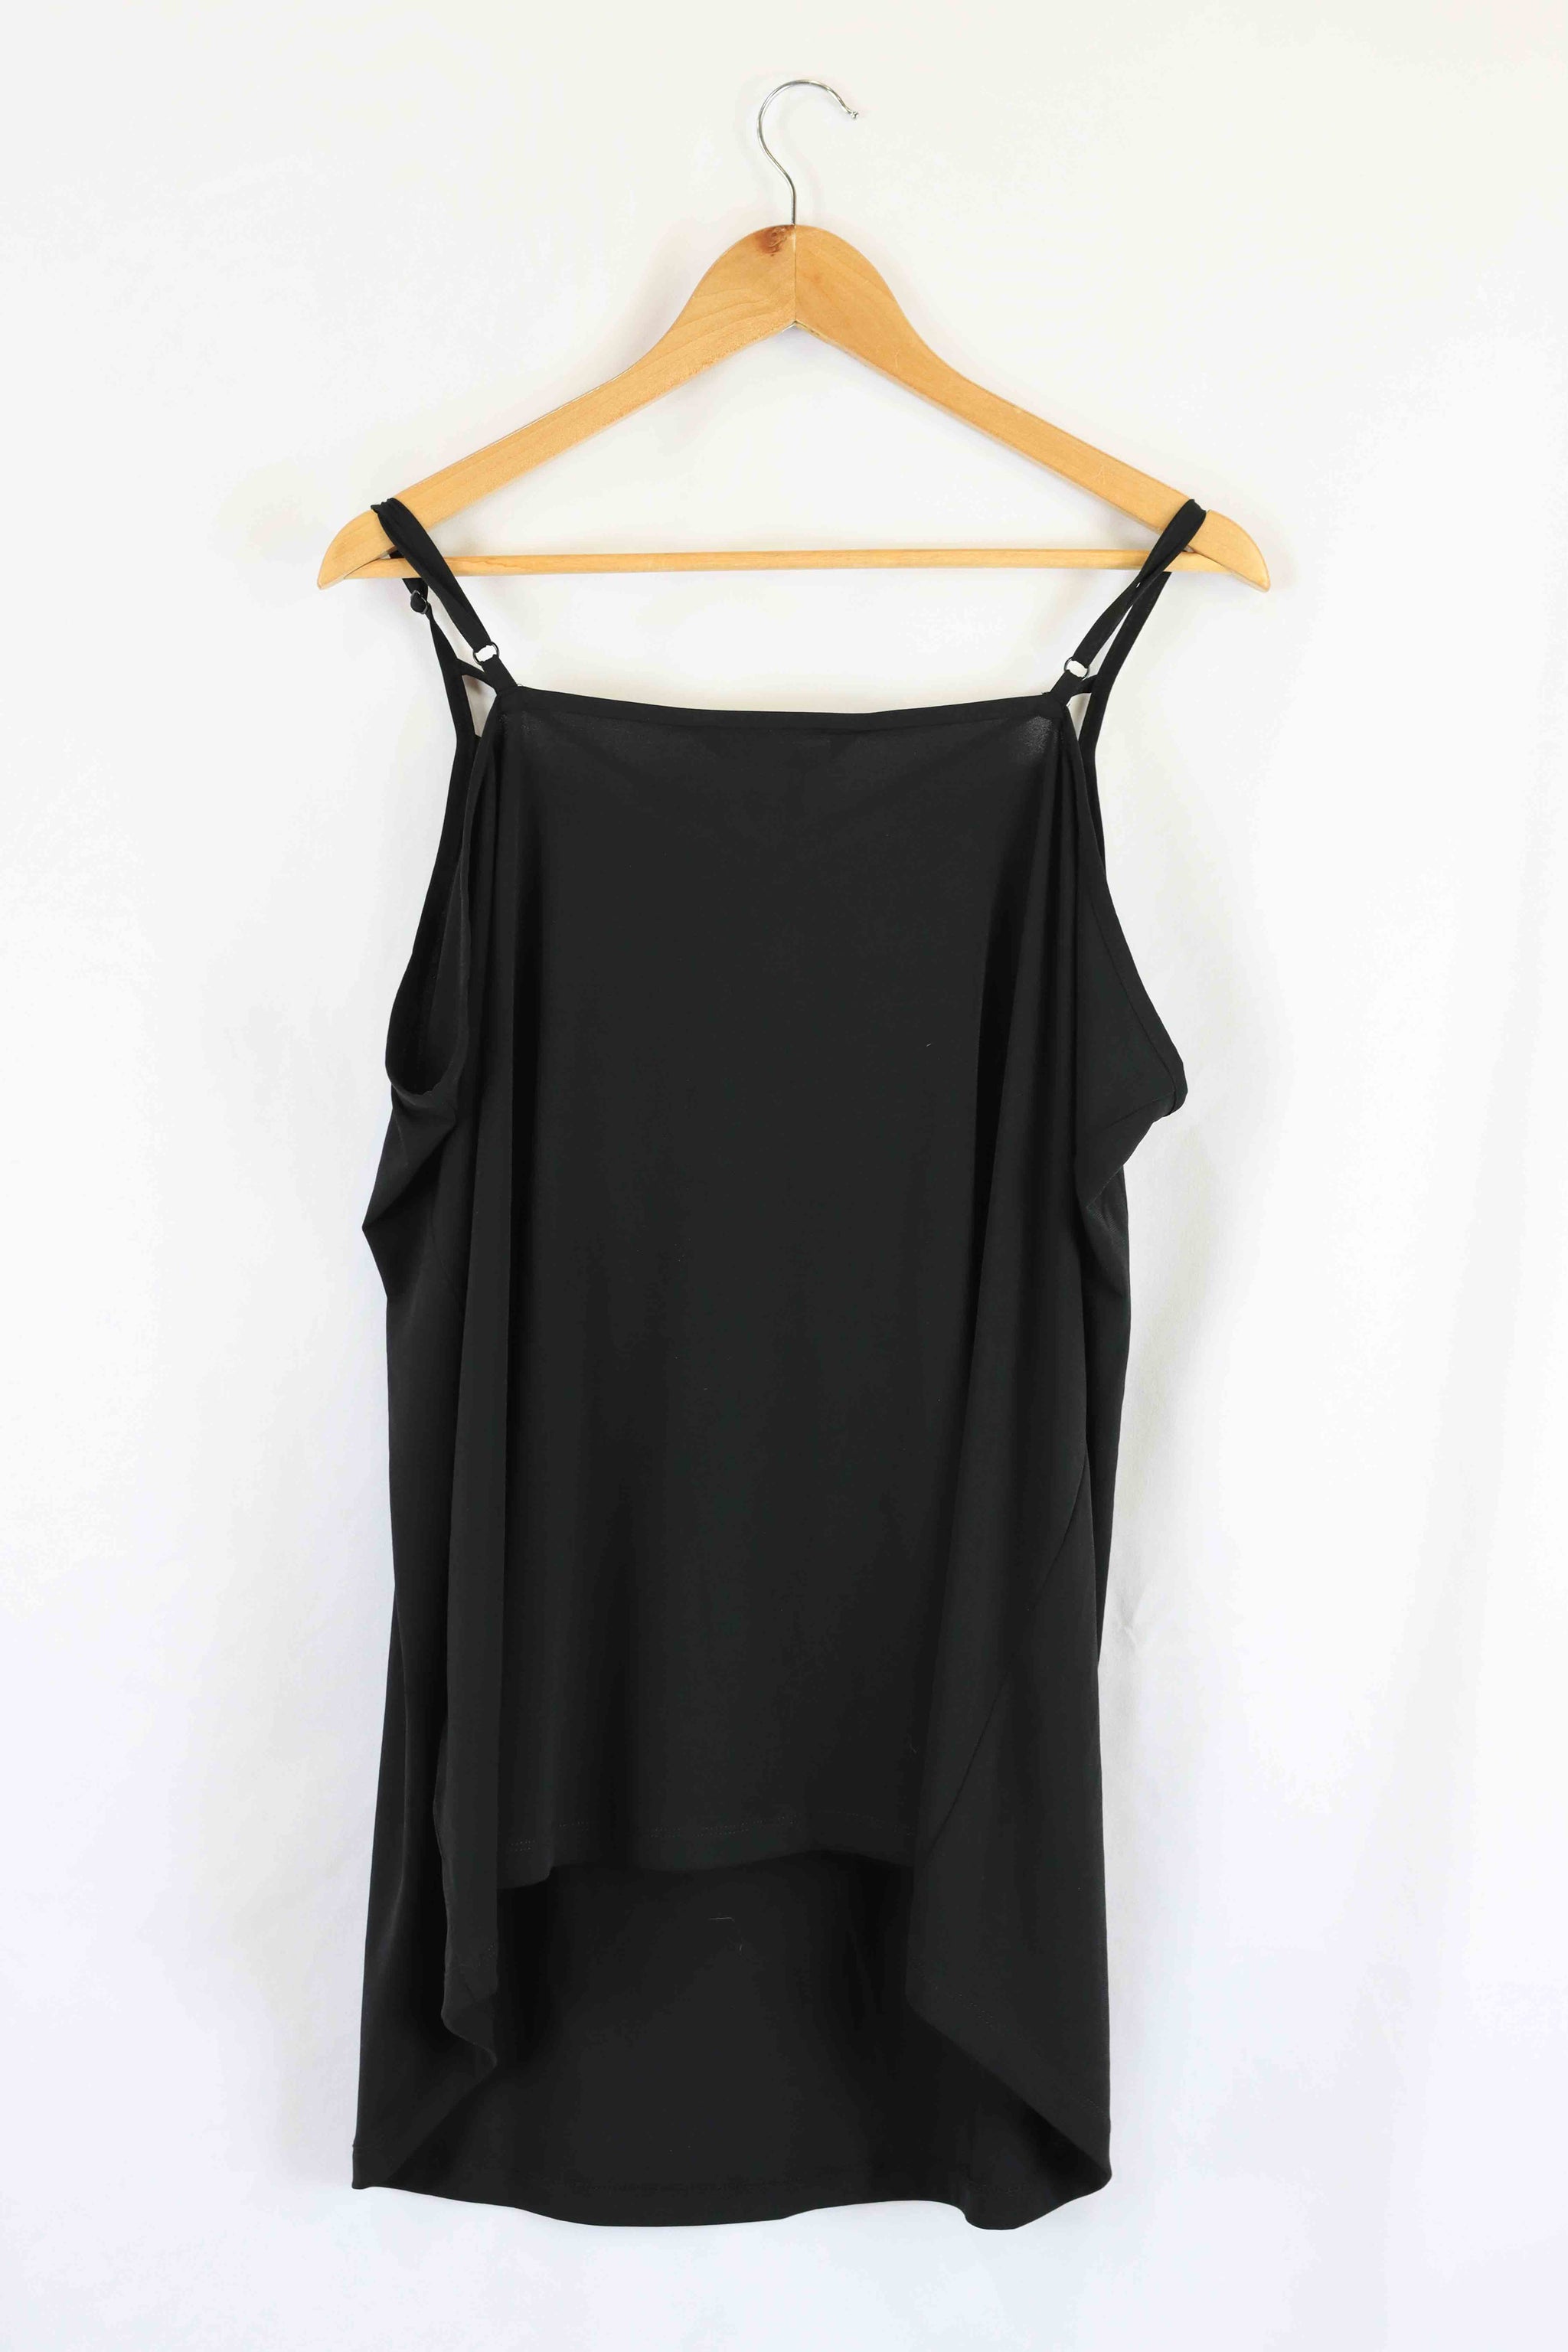 Taking Shape Black Singlet 22 - Reluv Clothing Australia